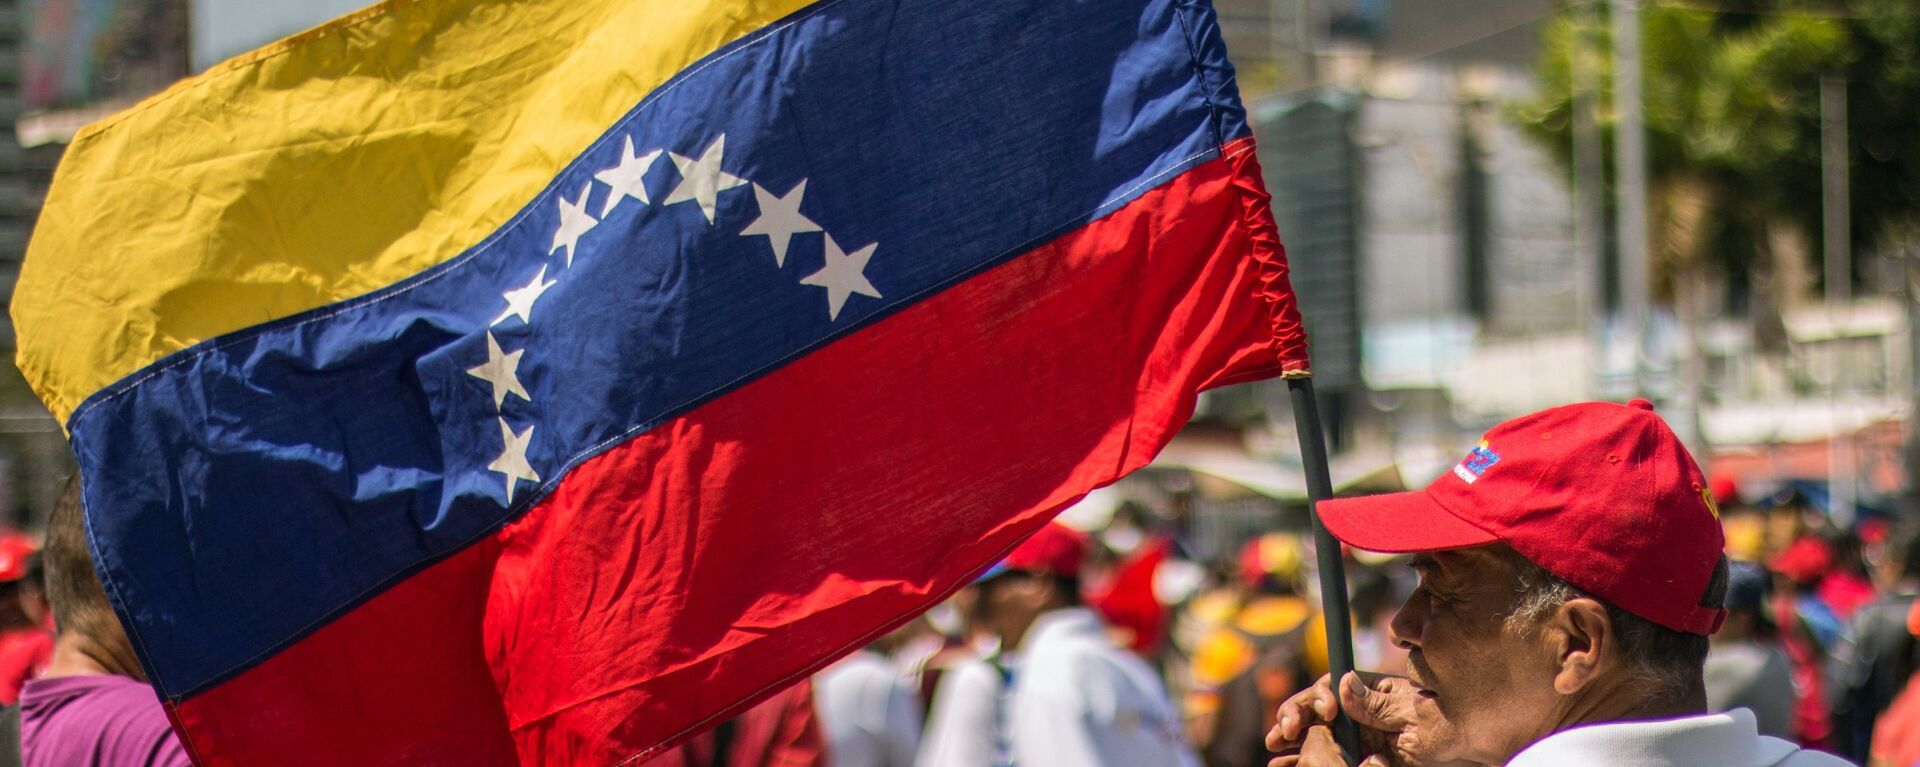 Un hombre con la bandera de Venezuela - Sputnik Mundo, 1920, 21.06.2021